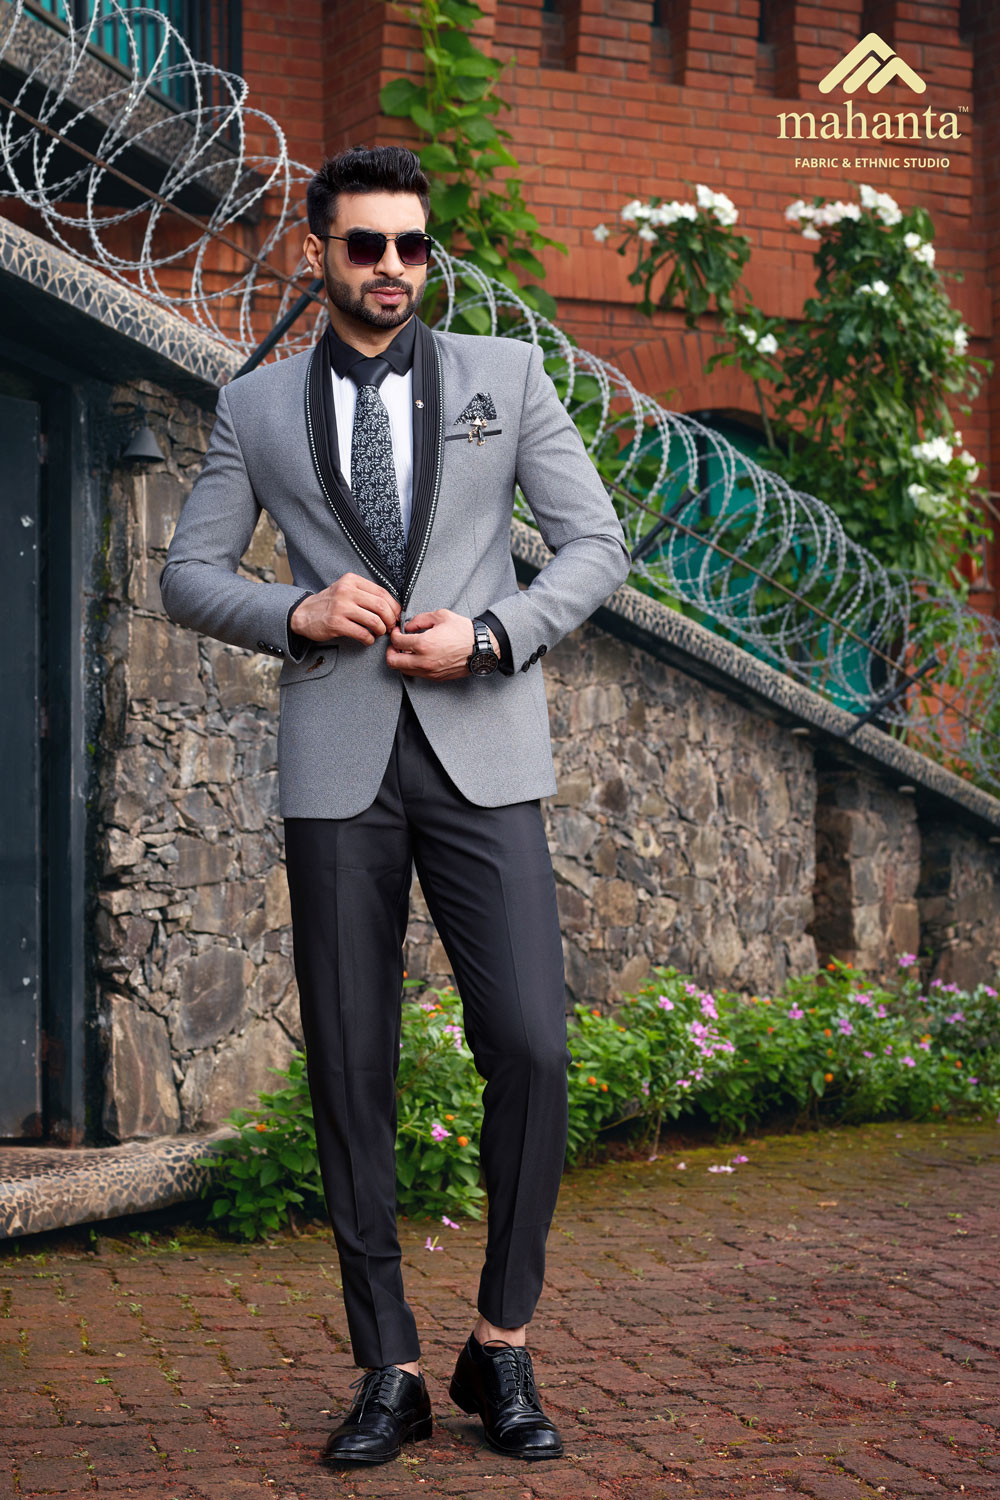 Grey suit